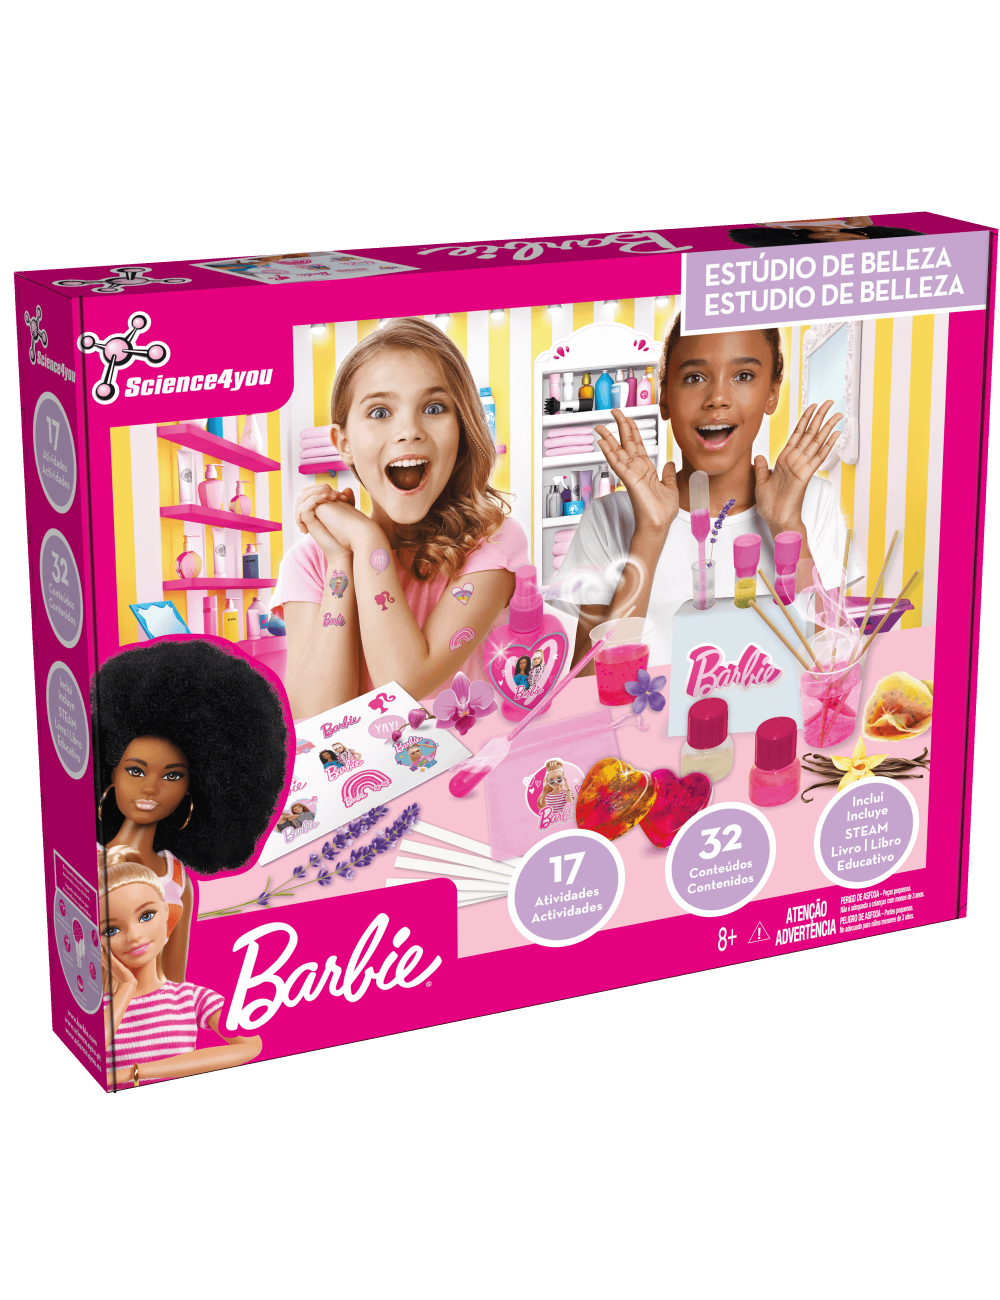 Jogo de Tabuleiro - Barbie